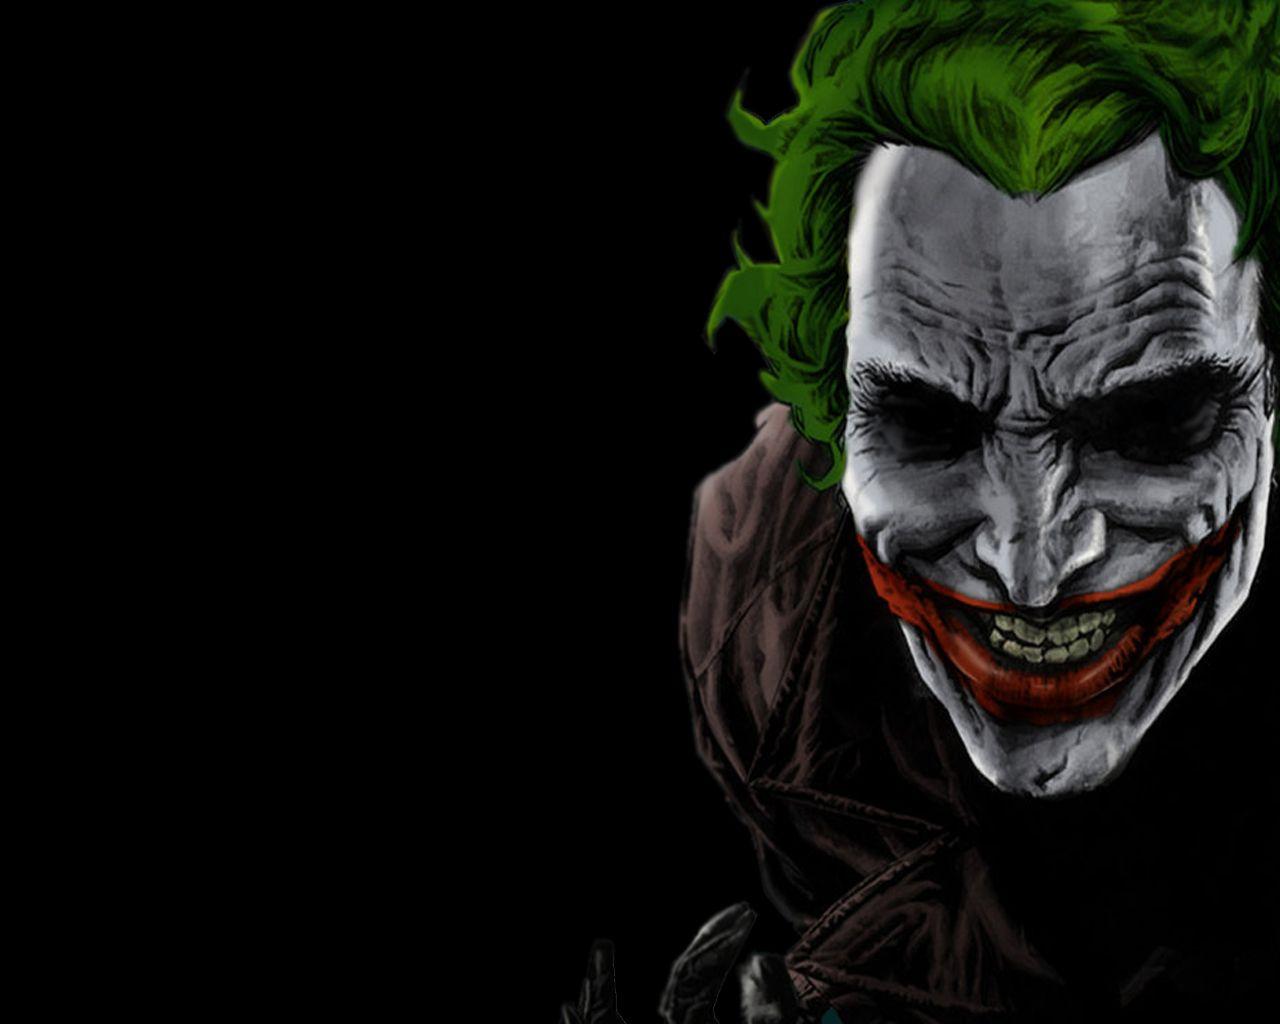 The Joker Wallpaper, Latest The Joker Background Image